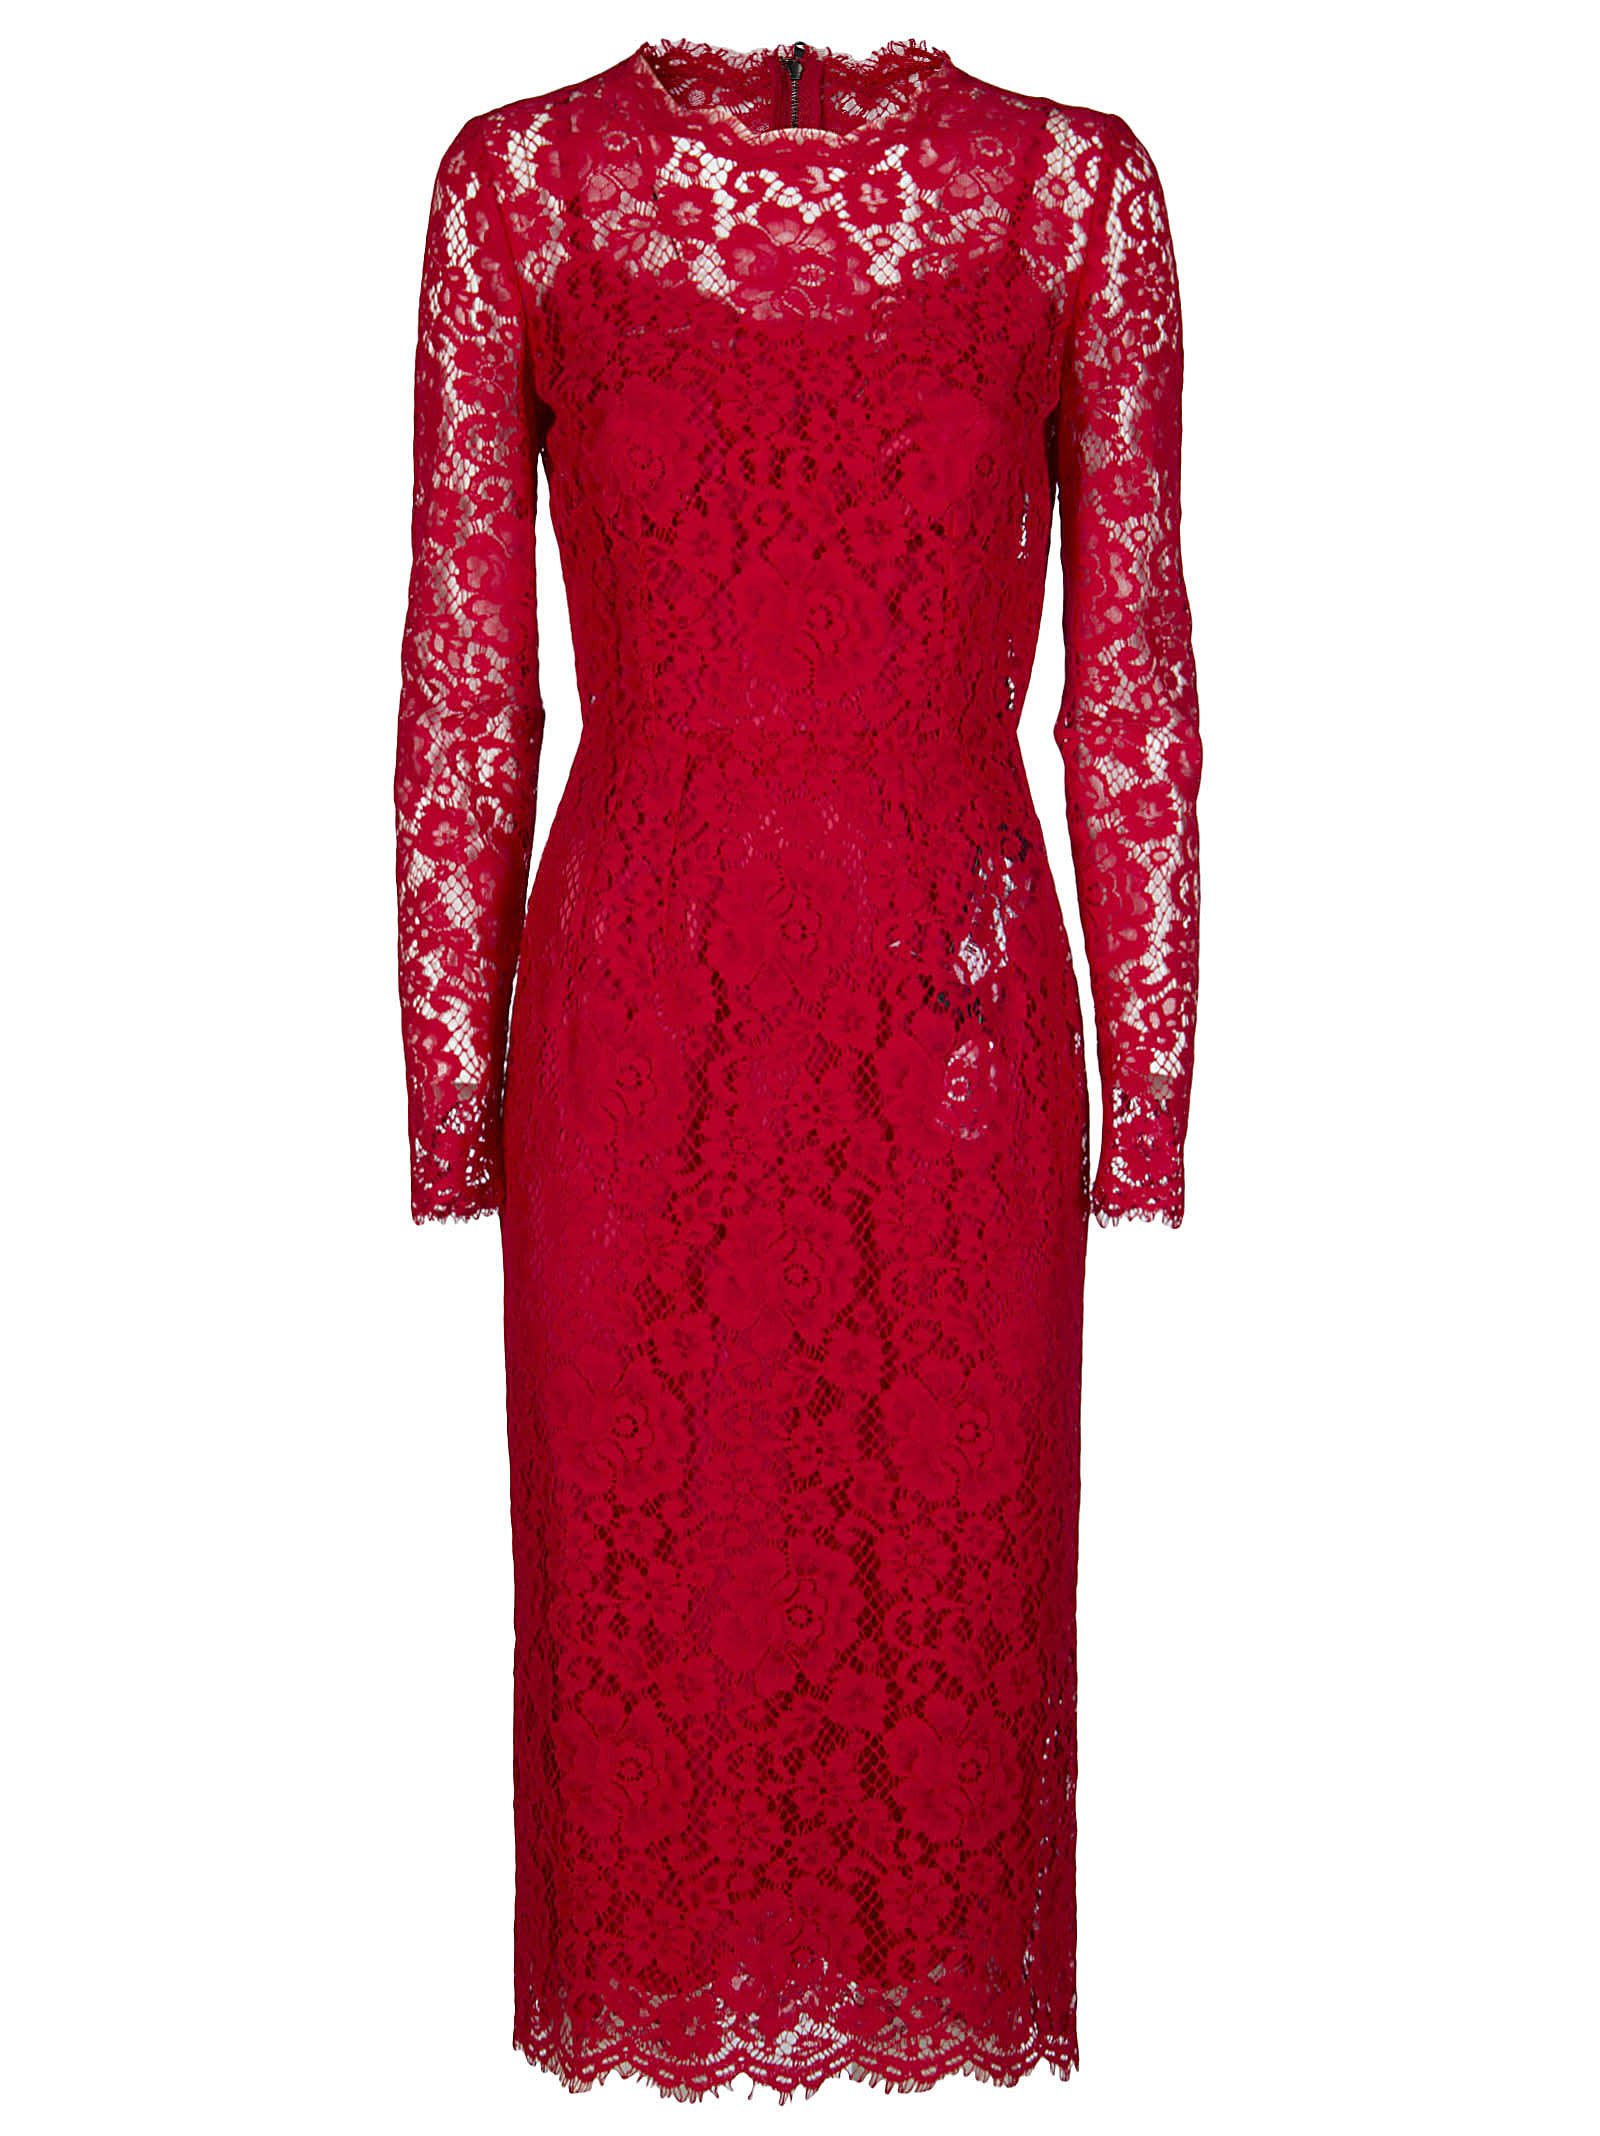 Dolce & Gabbana Red Cotton-viscose Blend Dress